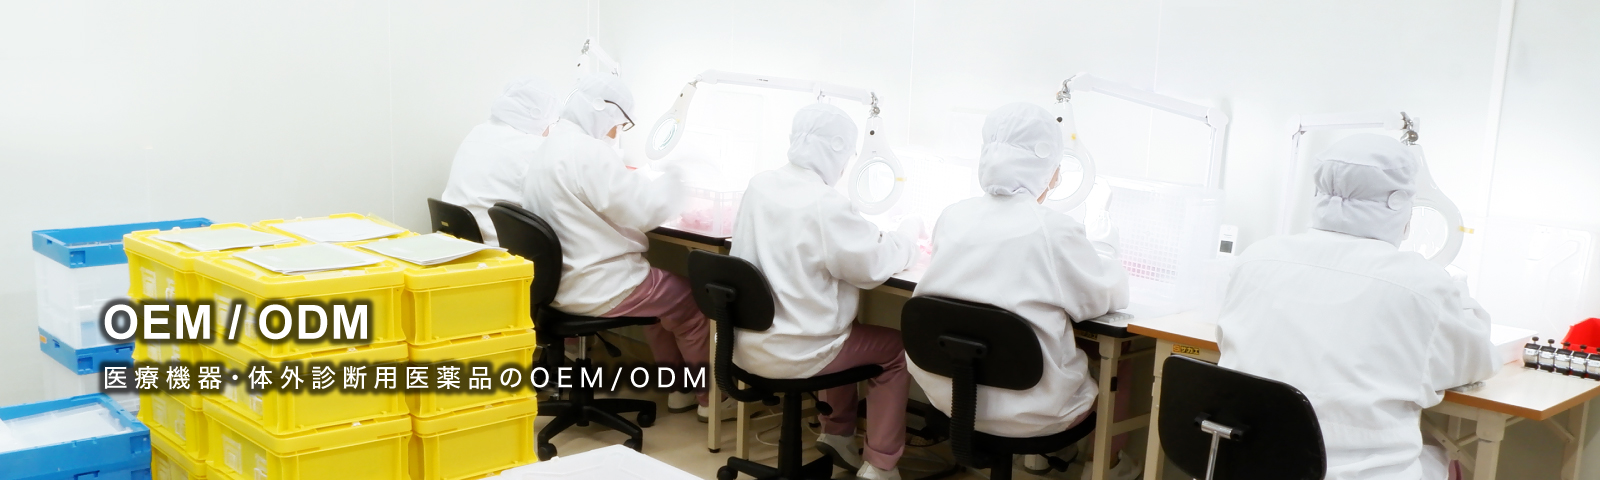 医療機器・体外診断用医薬品のOEM/ODM